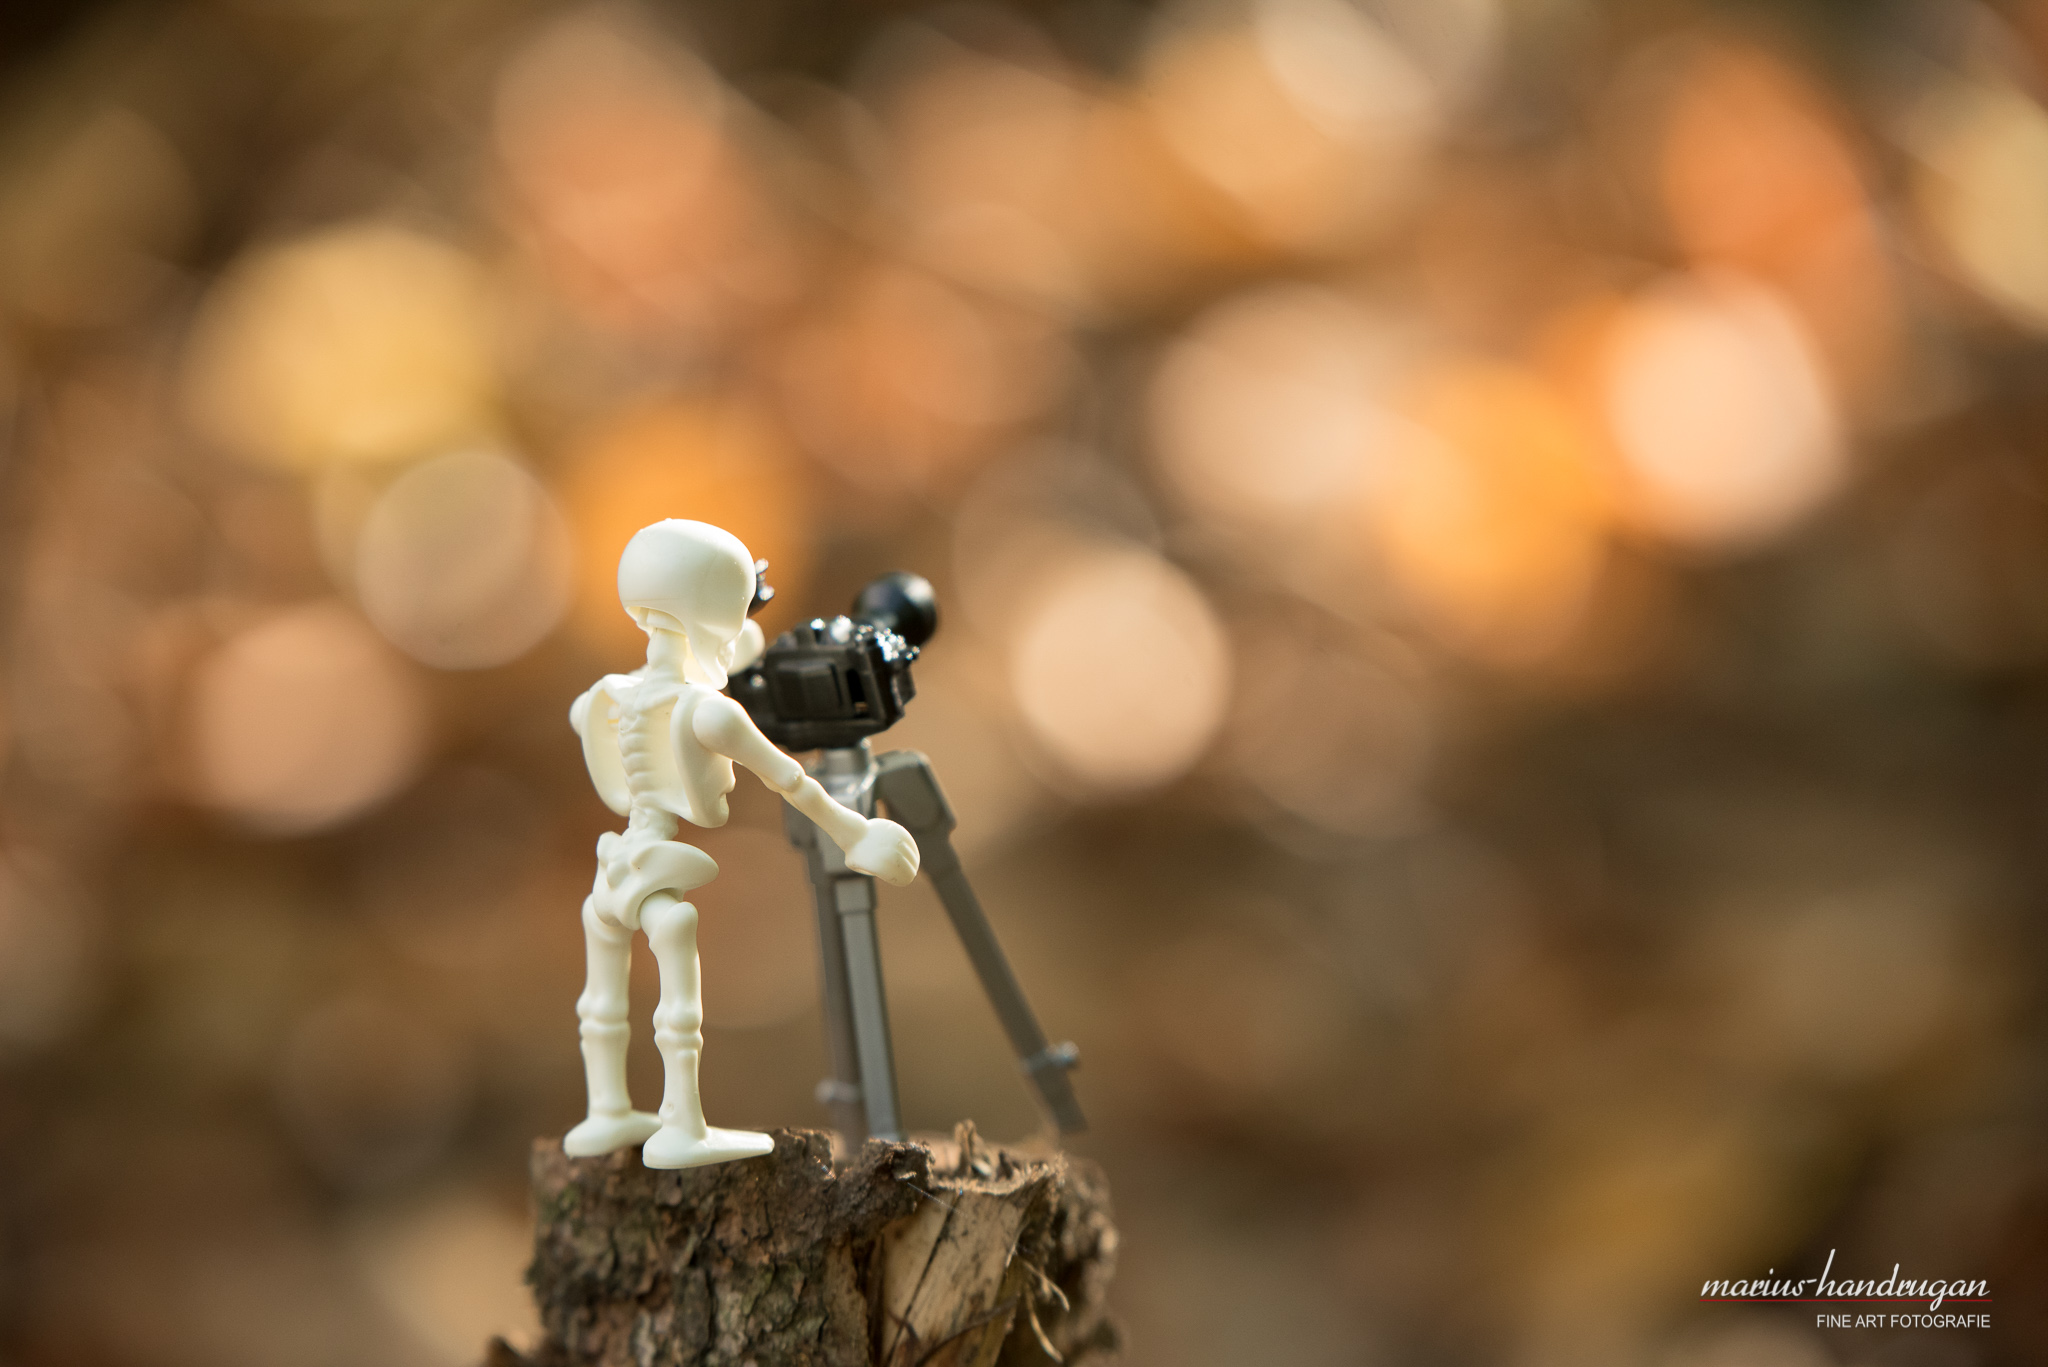 Playmobil Skelettfigur mit Kamera vor unscharfem Hintergrund